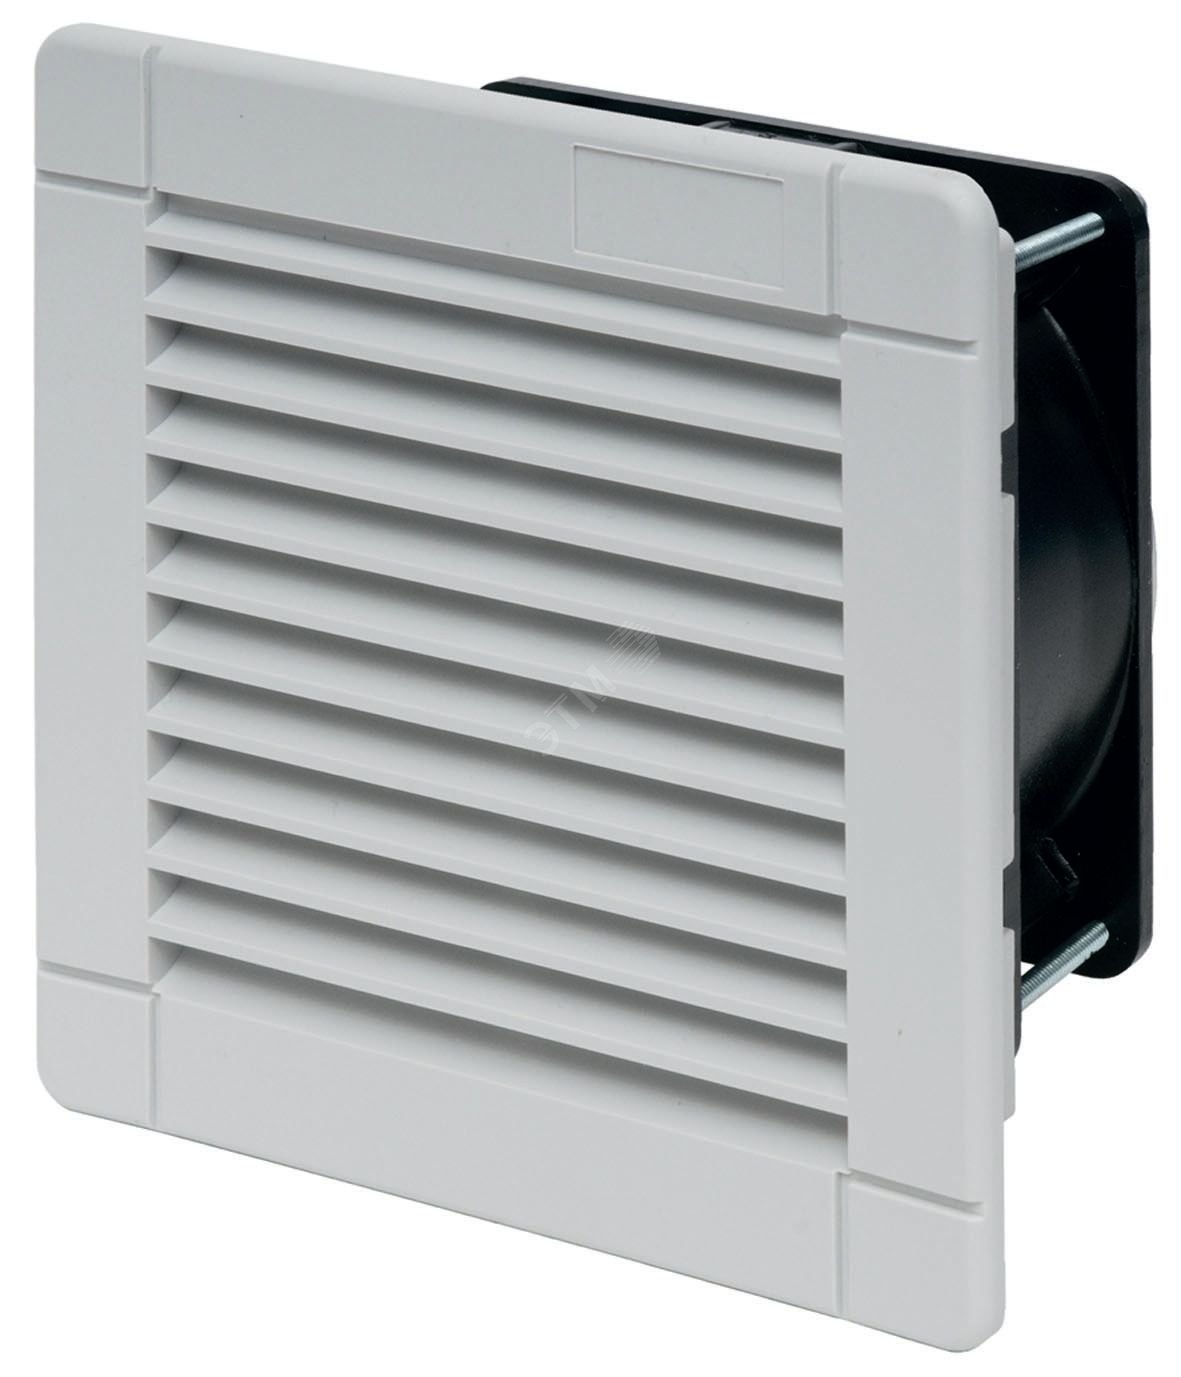 Вентилятор с фильтром стандартная версия питание 120В АС расход воздуха 55м3/ч IP54 7F5081202055 FINDER